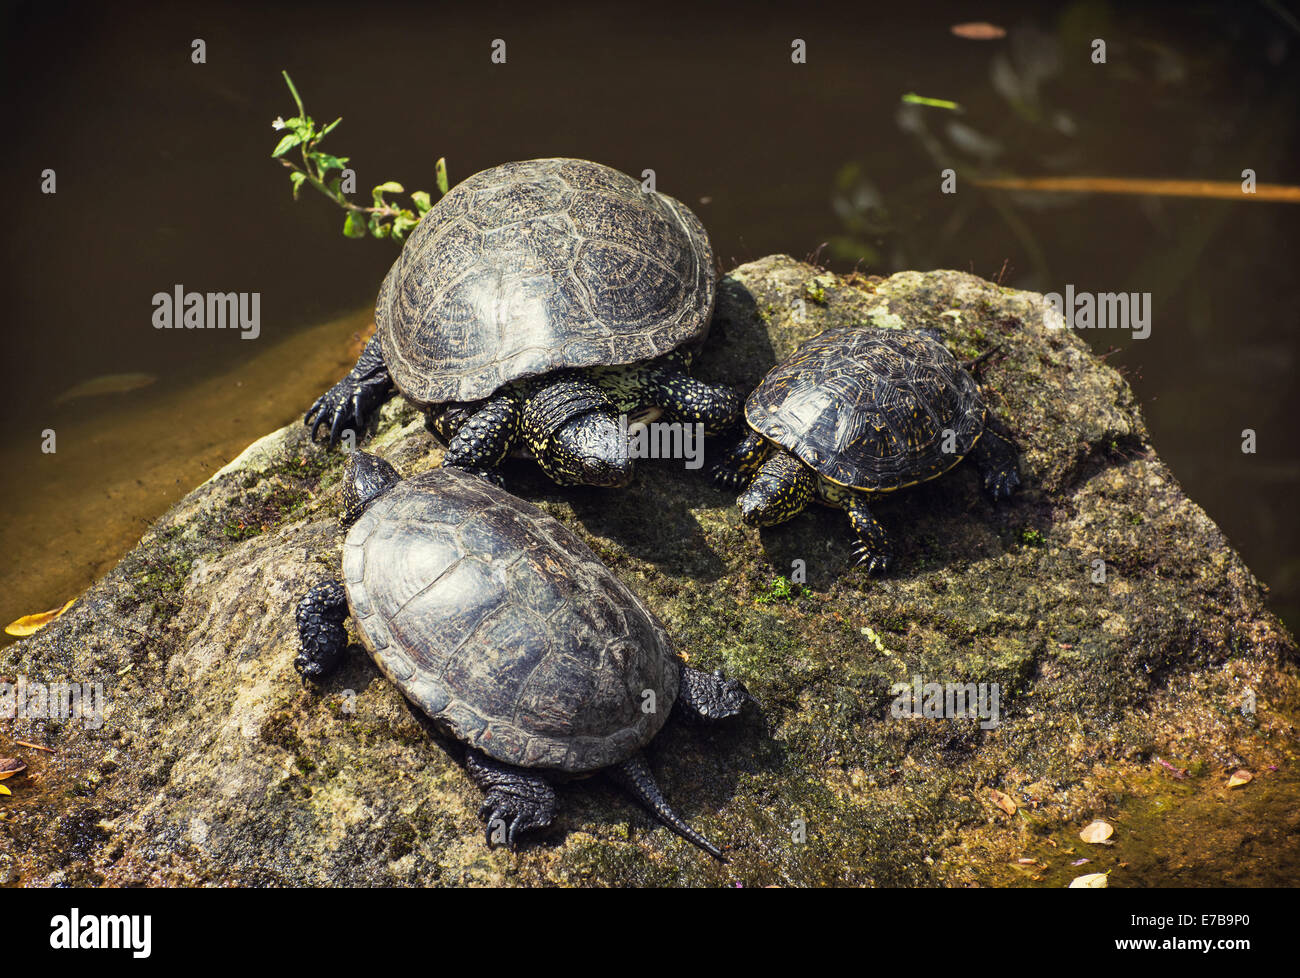 La tortuga de estanque europeo (Emys orbicularis), también llamado el estanque europeo, Galápago es una especie de agua dulce de larga vida de turt Foto de stock